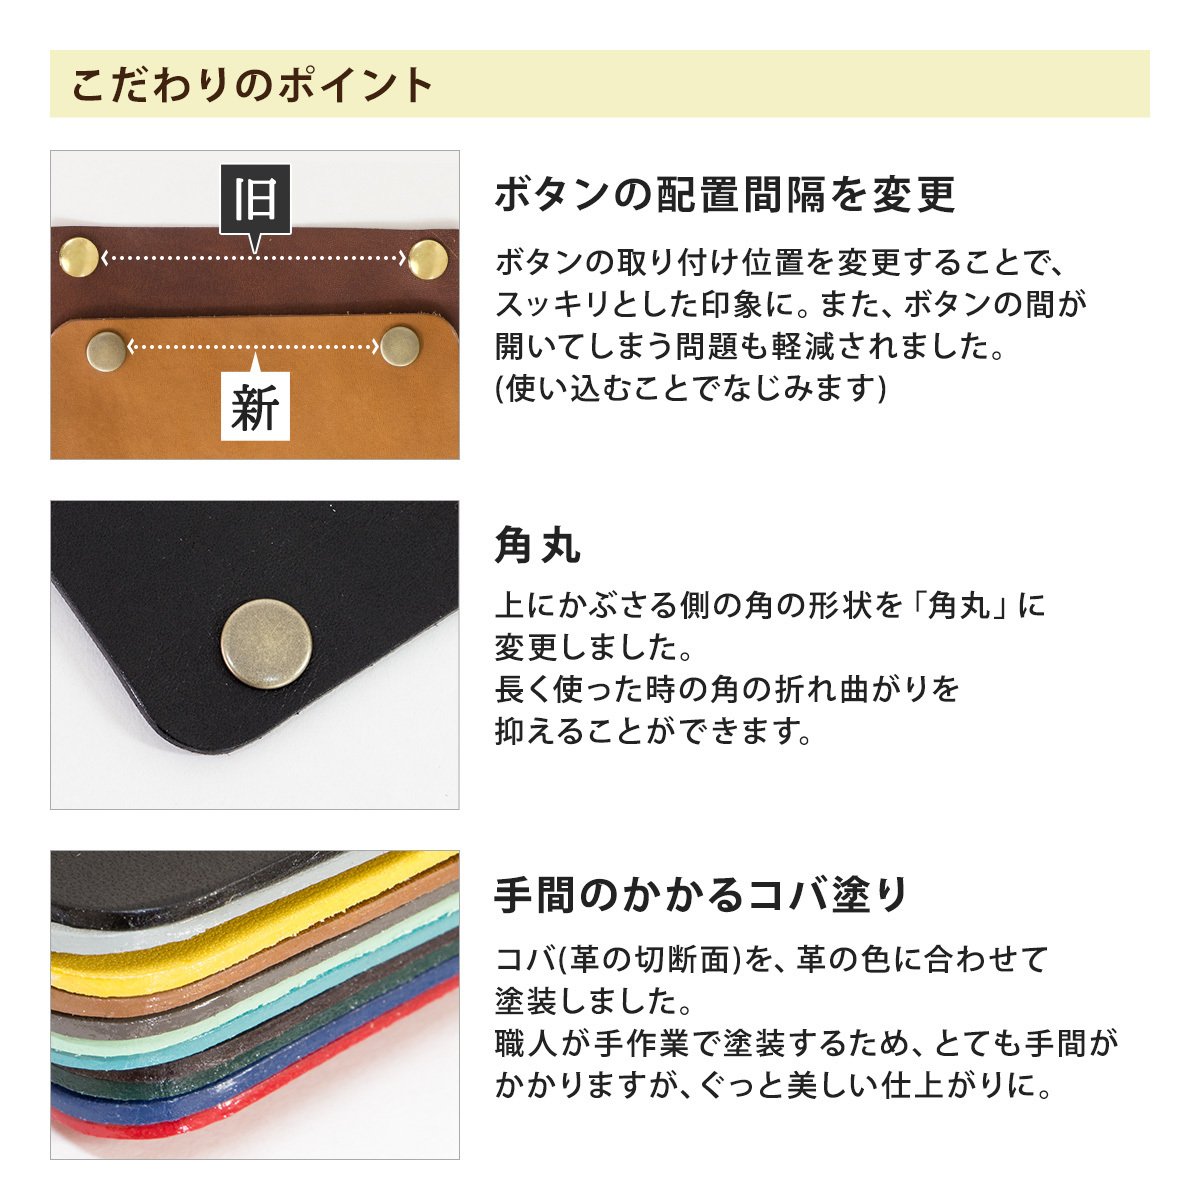  Revue бесплатная доставка сумка оплетка руля 2 листов комплект S or L итальянский кожа высококлассный использование сделано в Японии держать рука ручка натуральная кожа 